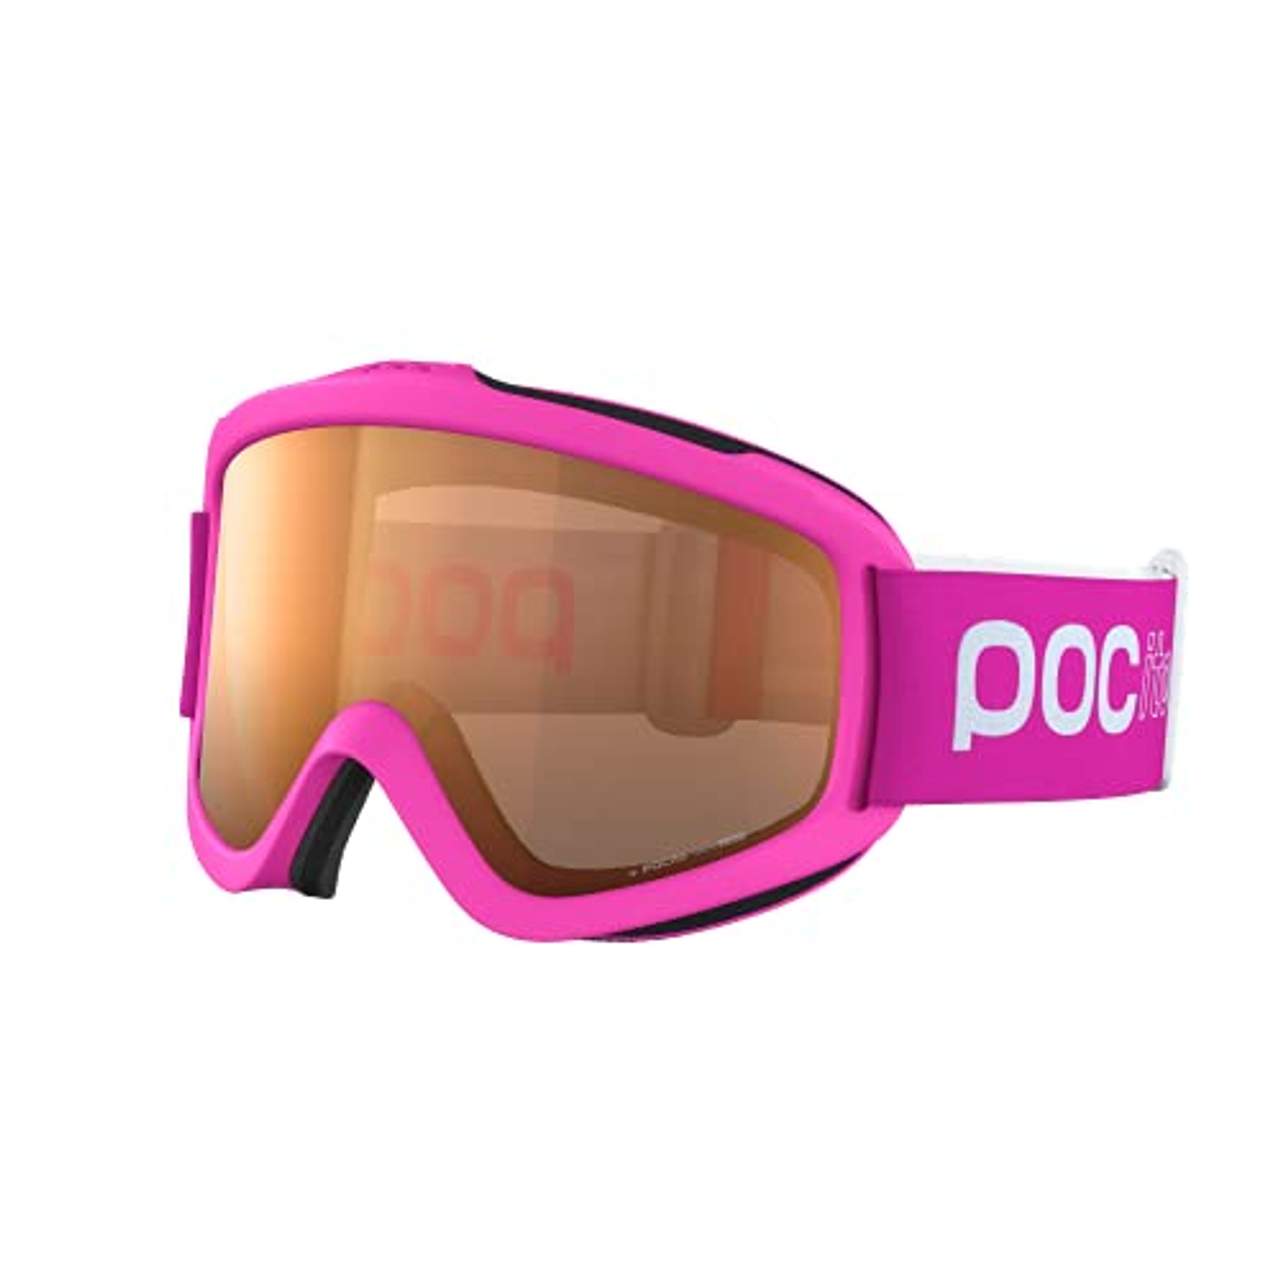 OutdoorMaster Skibrille Kinder Schneebrille mit Dual-Layer Linse Technology Helmkompatible Snowboardbrille mit OTG Design UV 400 Schutz Ski Goggles für Skifahren 